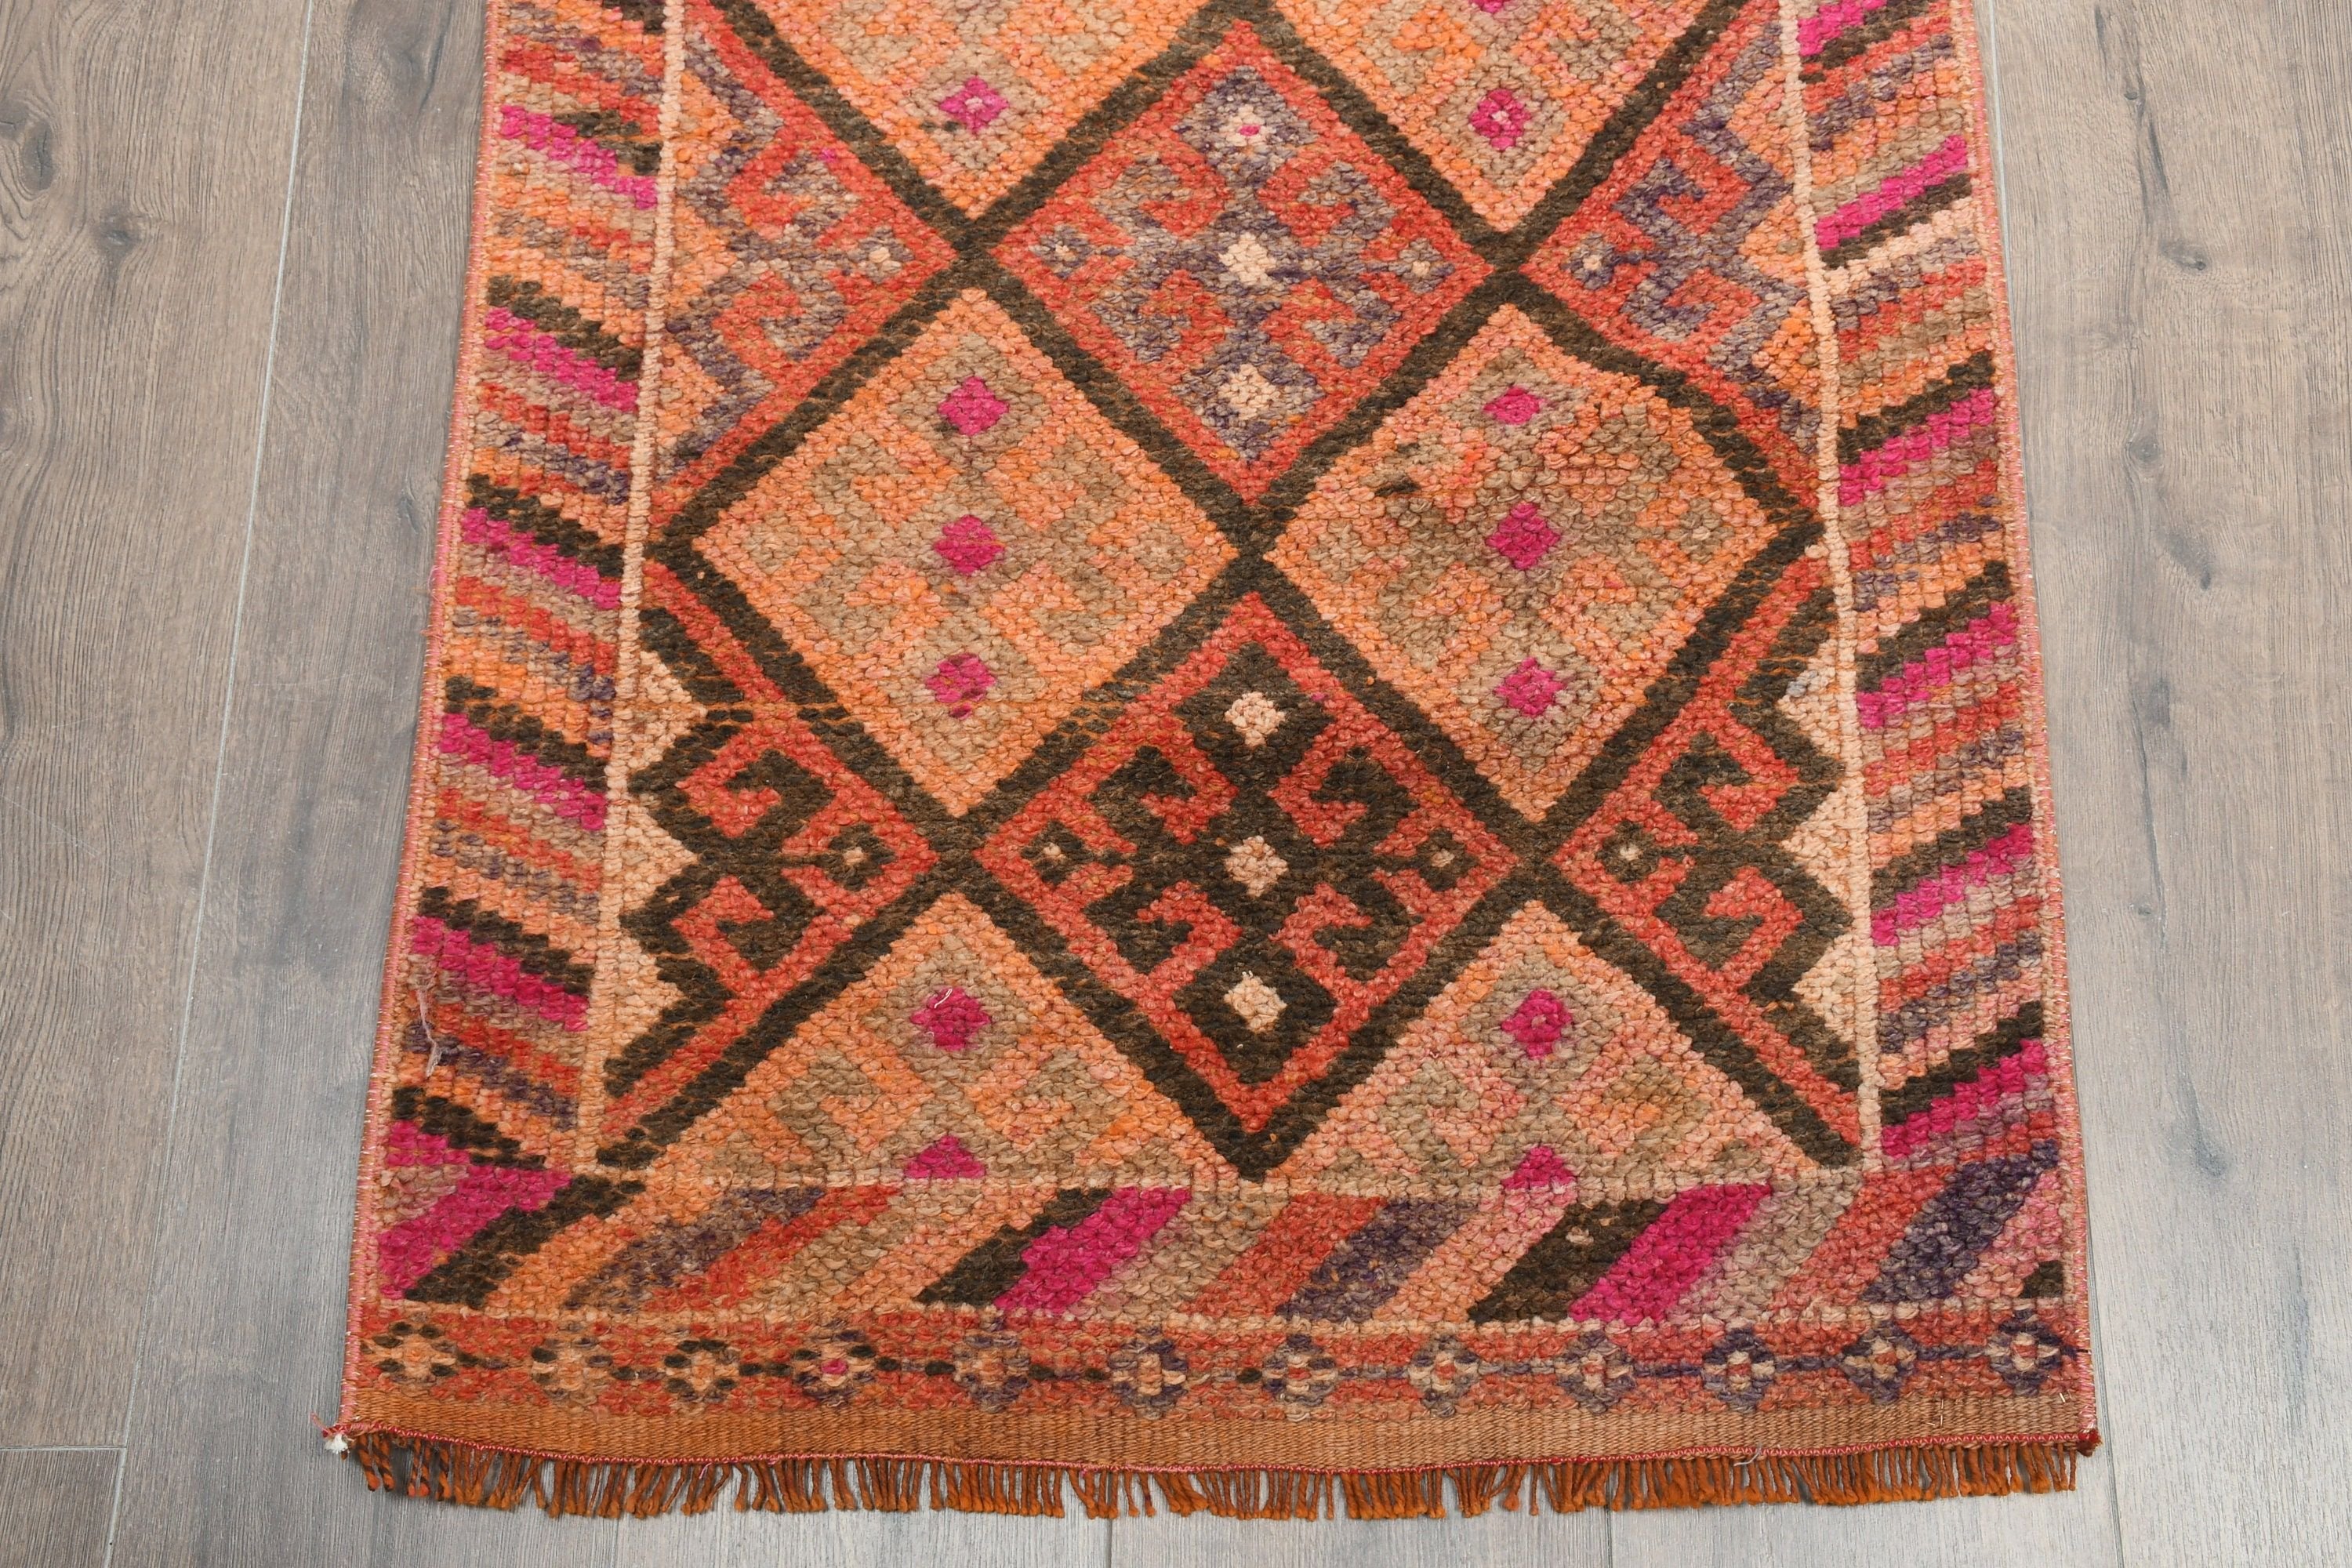 Anatolian Rug, Stair Rug, Vintage Rugs, Turkish Rug, Corridor Rug, Pink Oriental Rug, Eclectic Rugs, Oriental Rug, 2.3x13.1 ft Runner Rugs